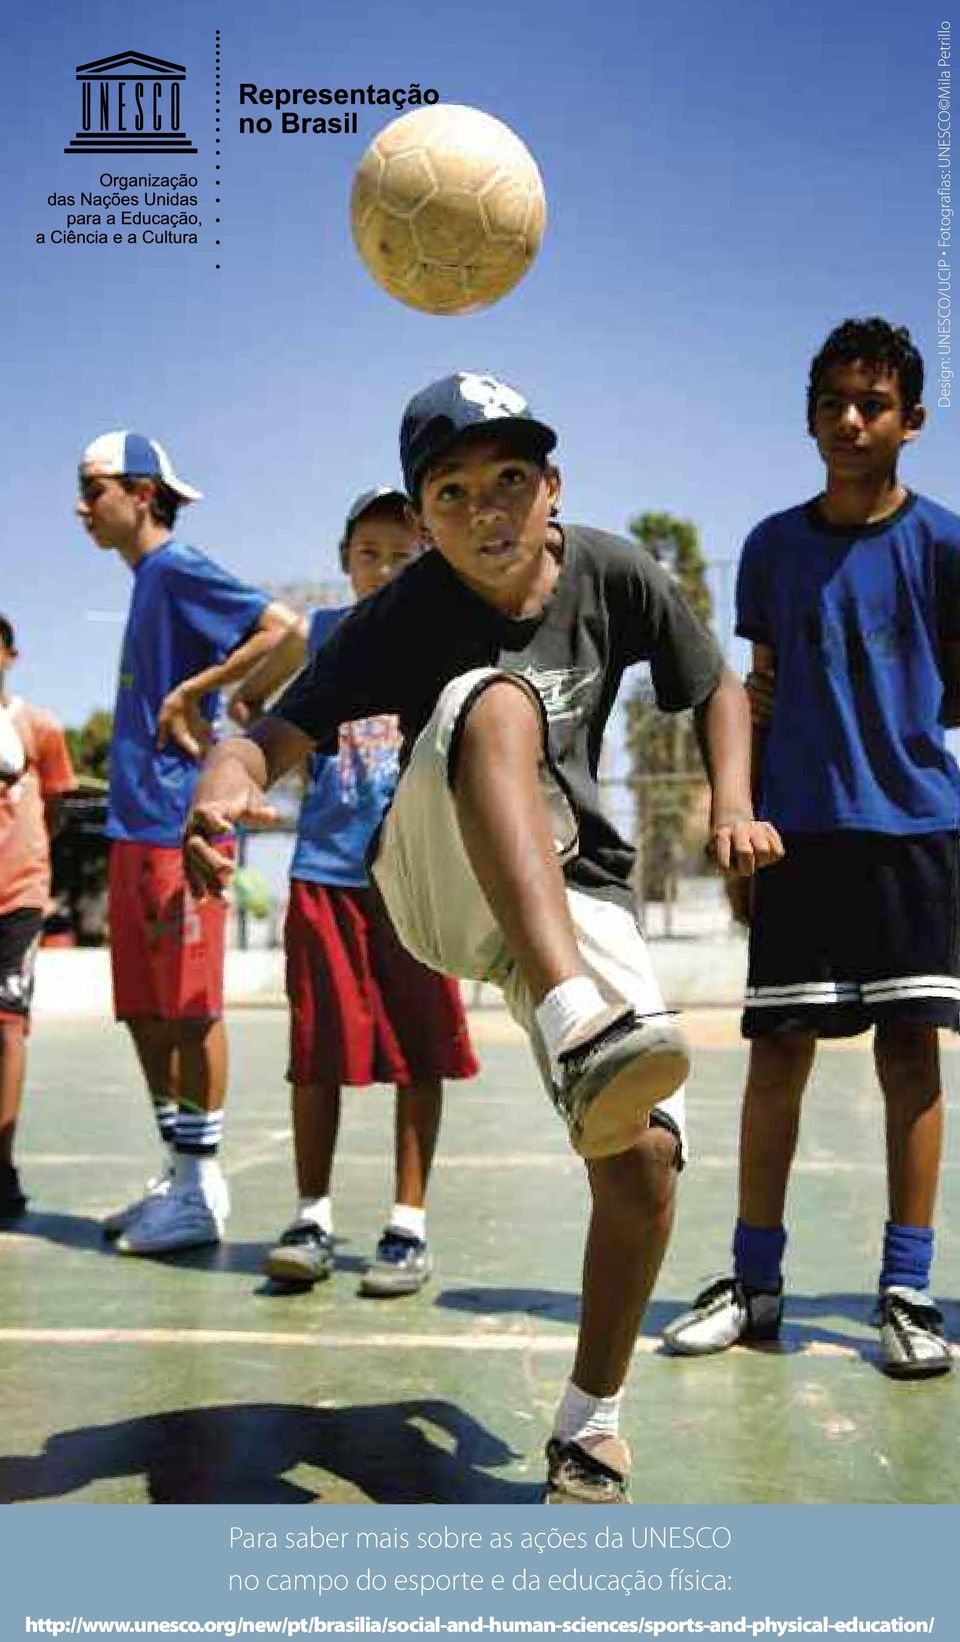 esporte e da educação física: http://www.unesco.